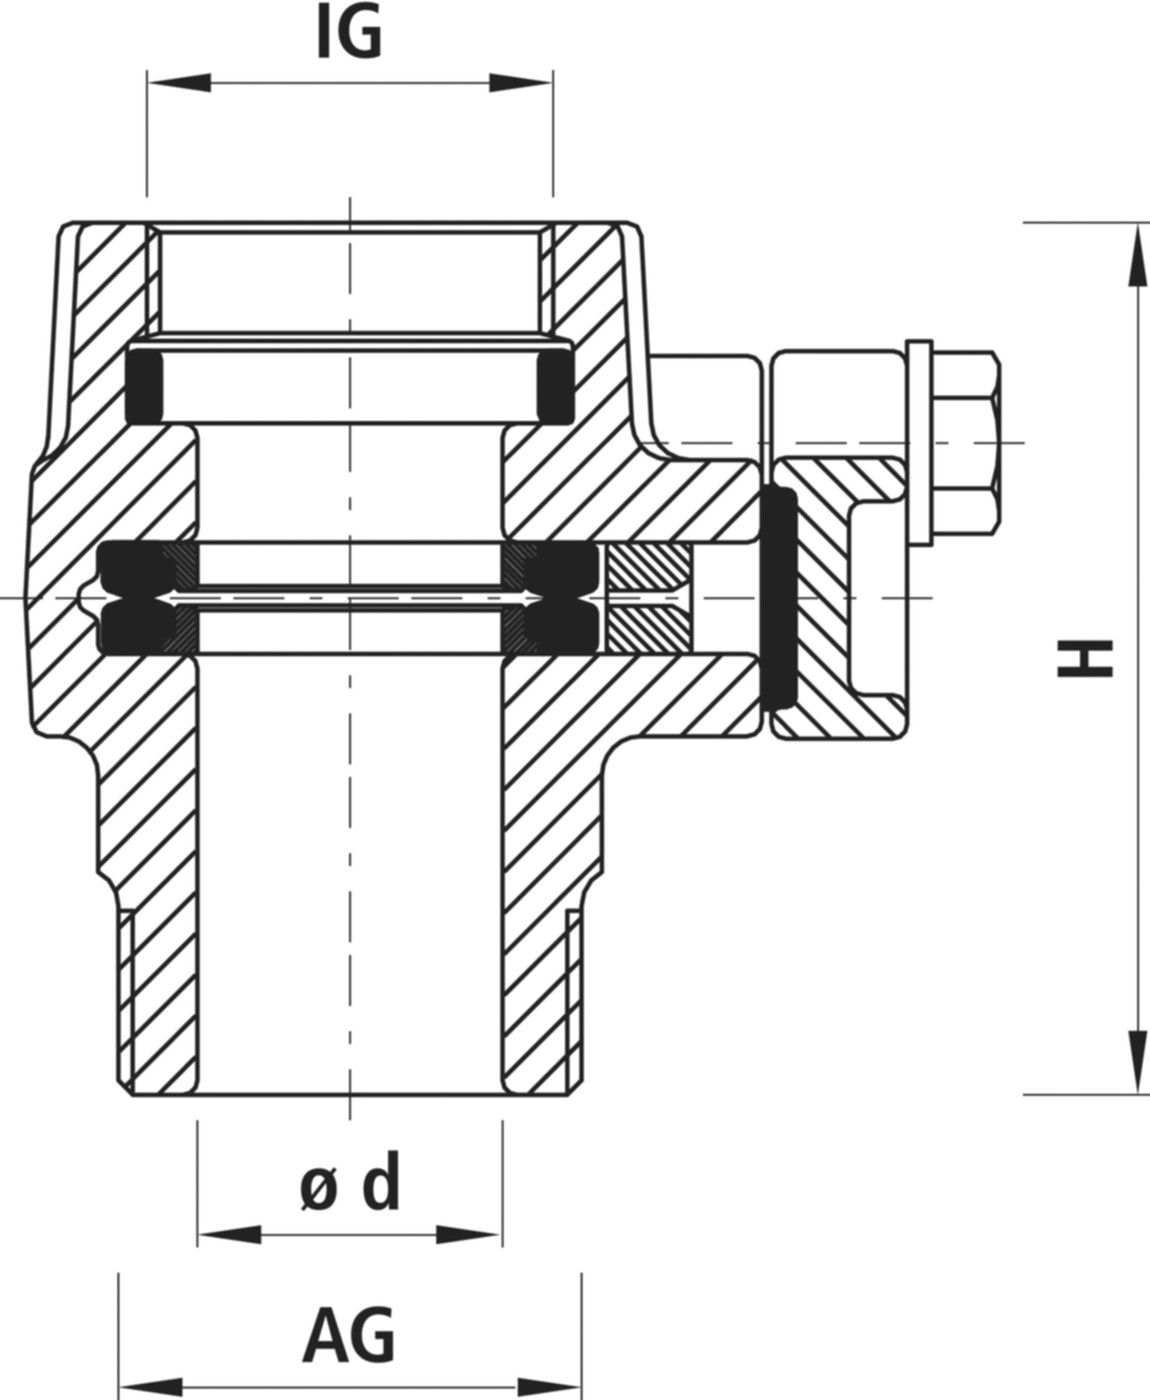 Einschraub-Anbohrsperre IG/AG 3720 2" - 2" - Hawle Hausanschluss- und Anbohrarmaturen